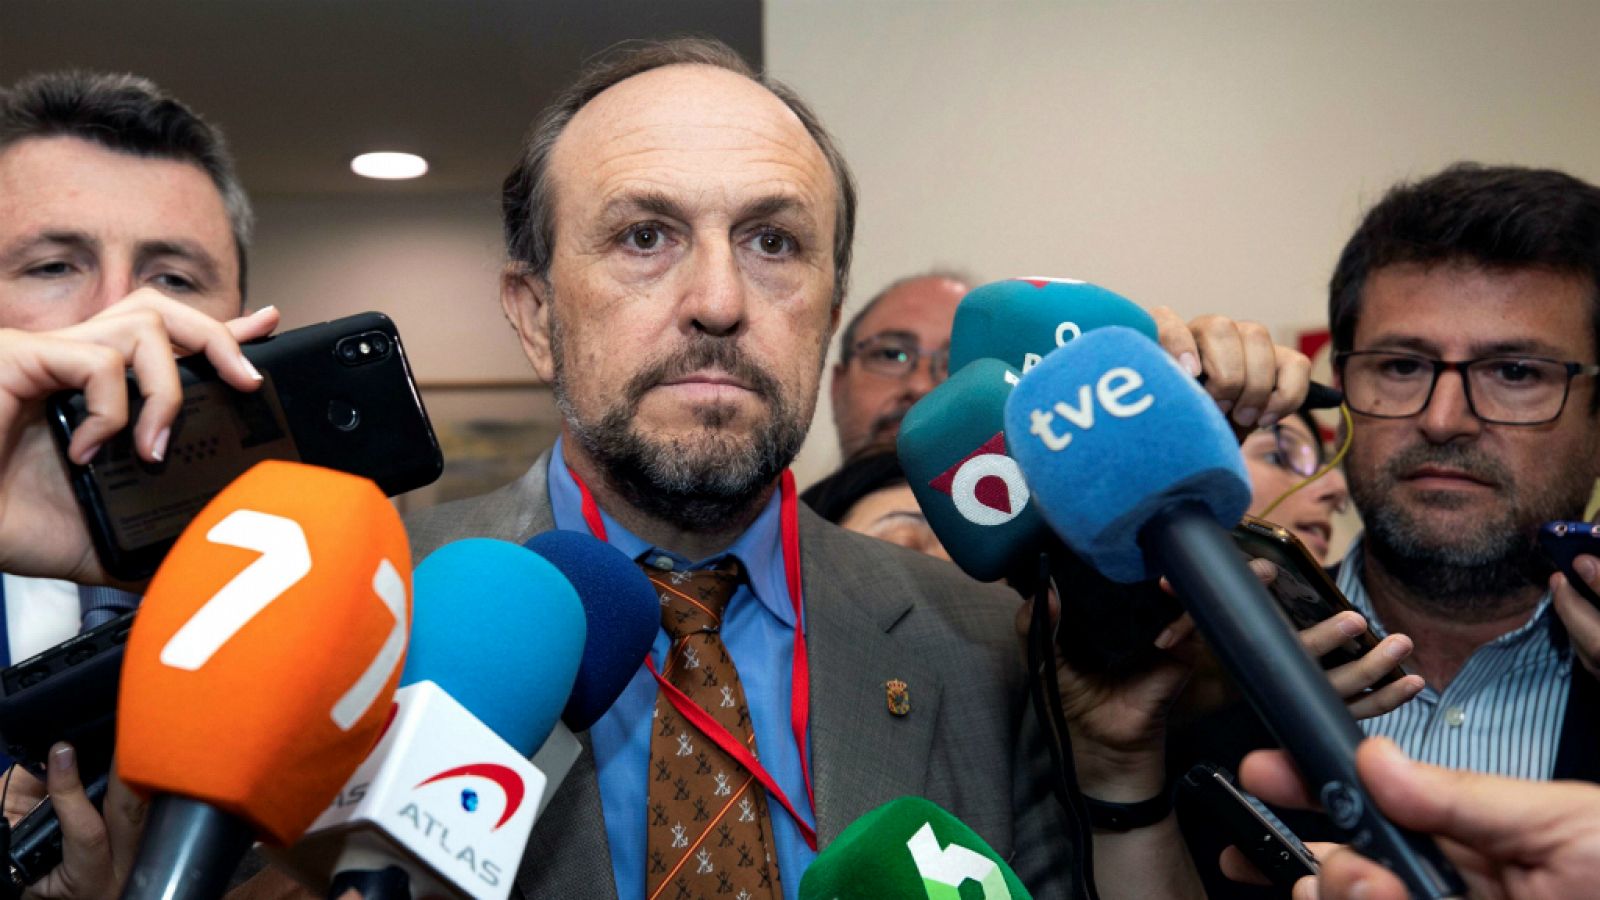 Las mañanas de RNE con Íñigo Alfonso - Gestoso (Vox): "Es falso que recibiéramos la orden de facilitar la investidura en Murcia"